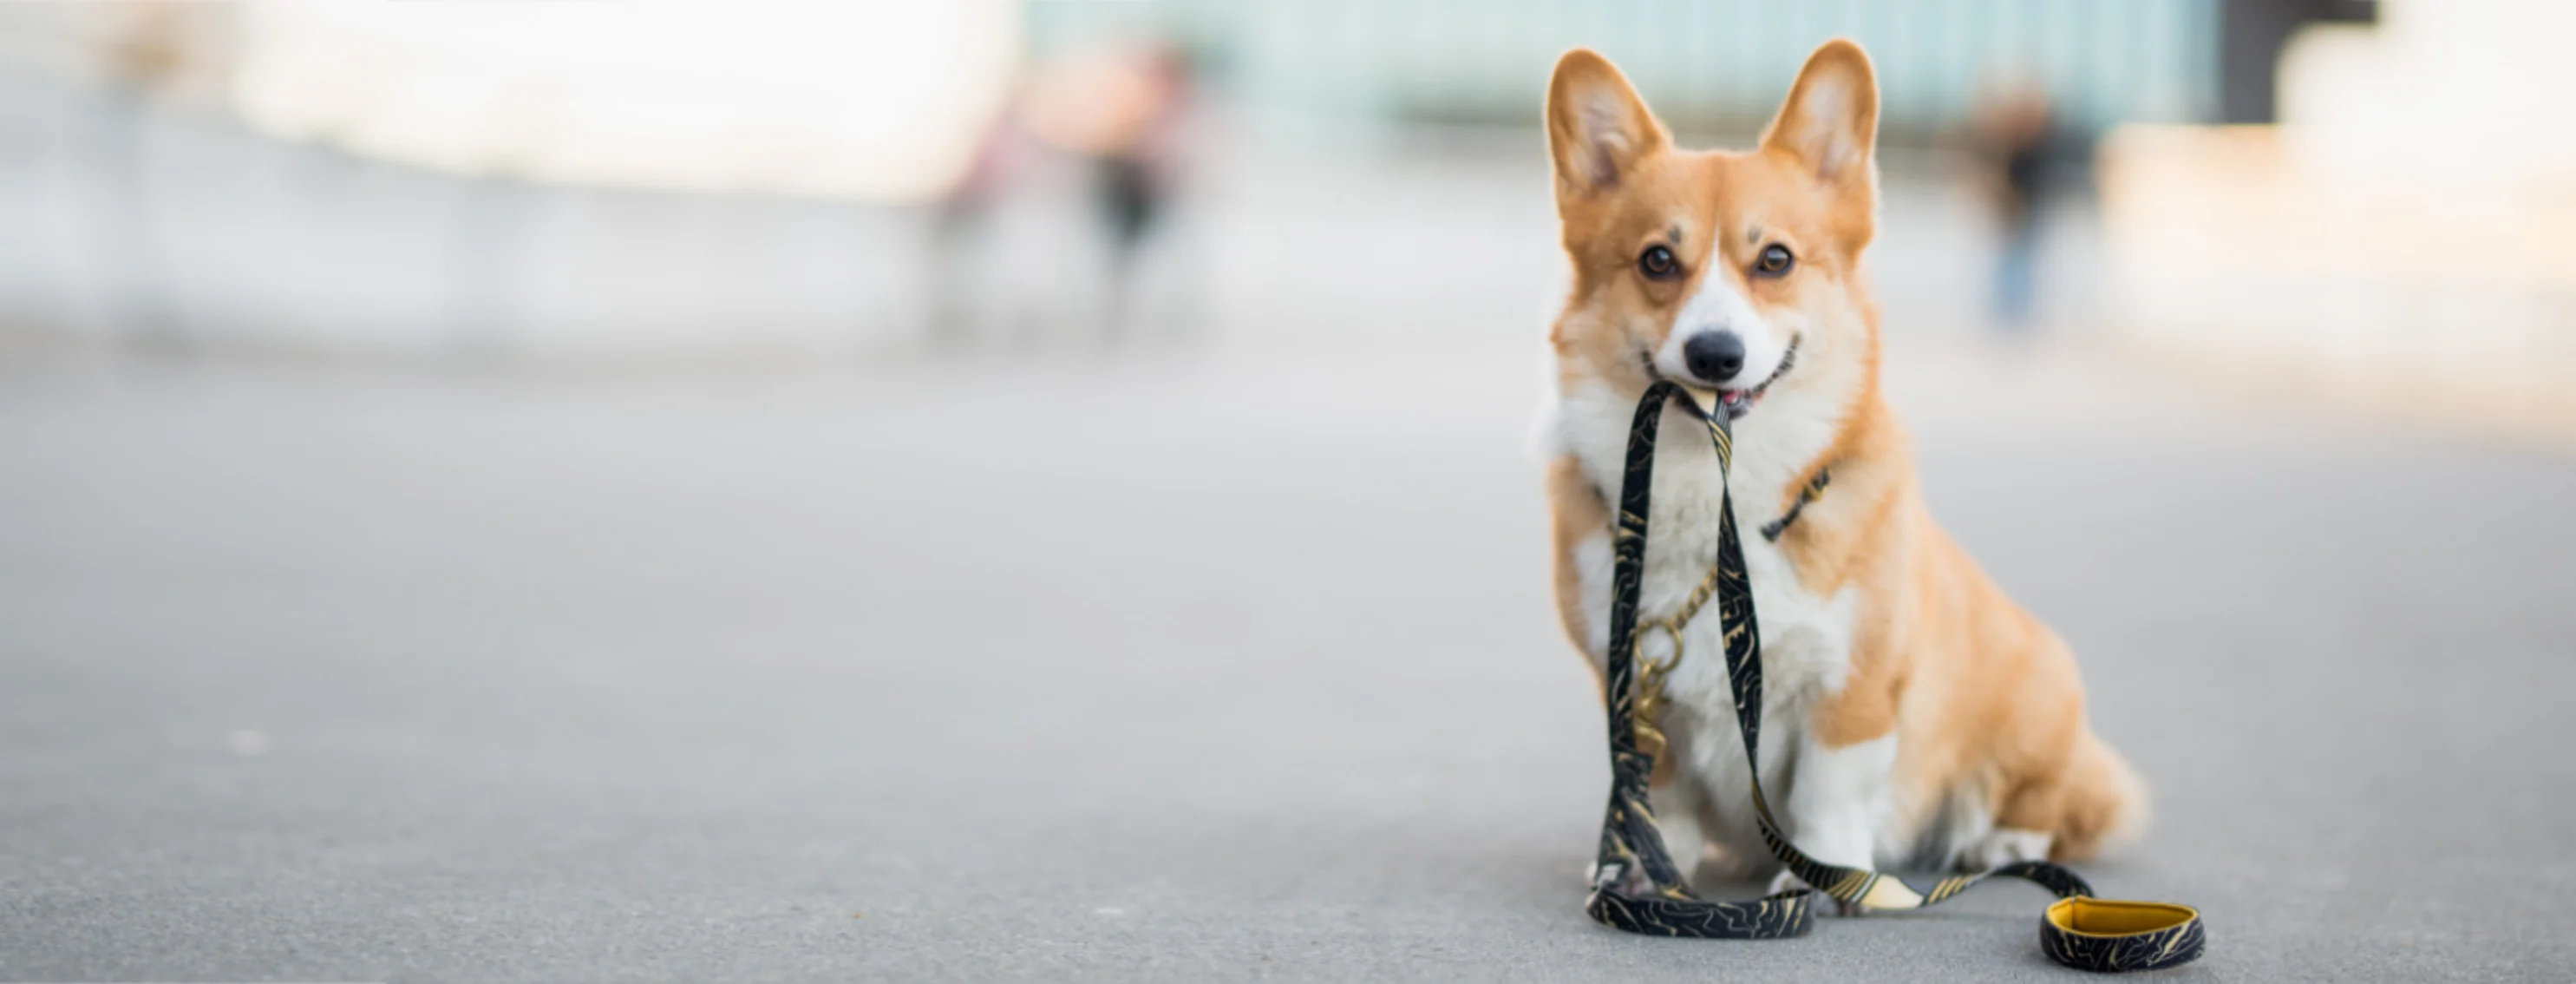 Corgi (Dog) Holding a Leash in the City